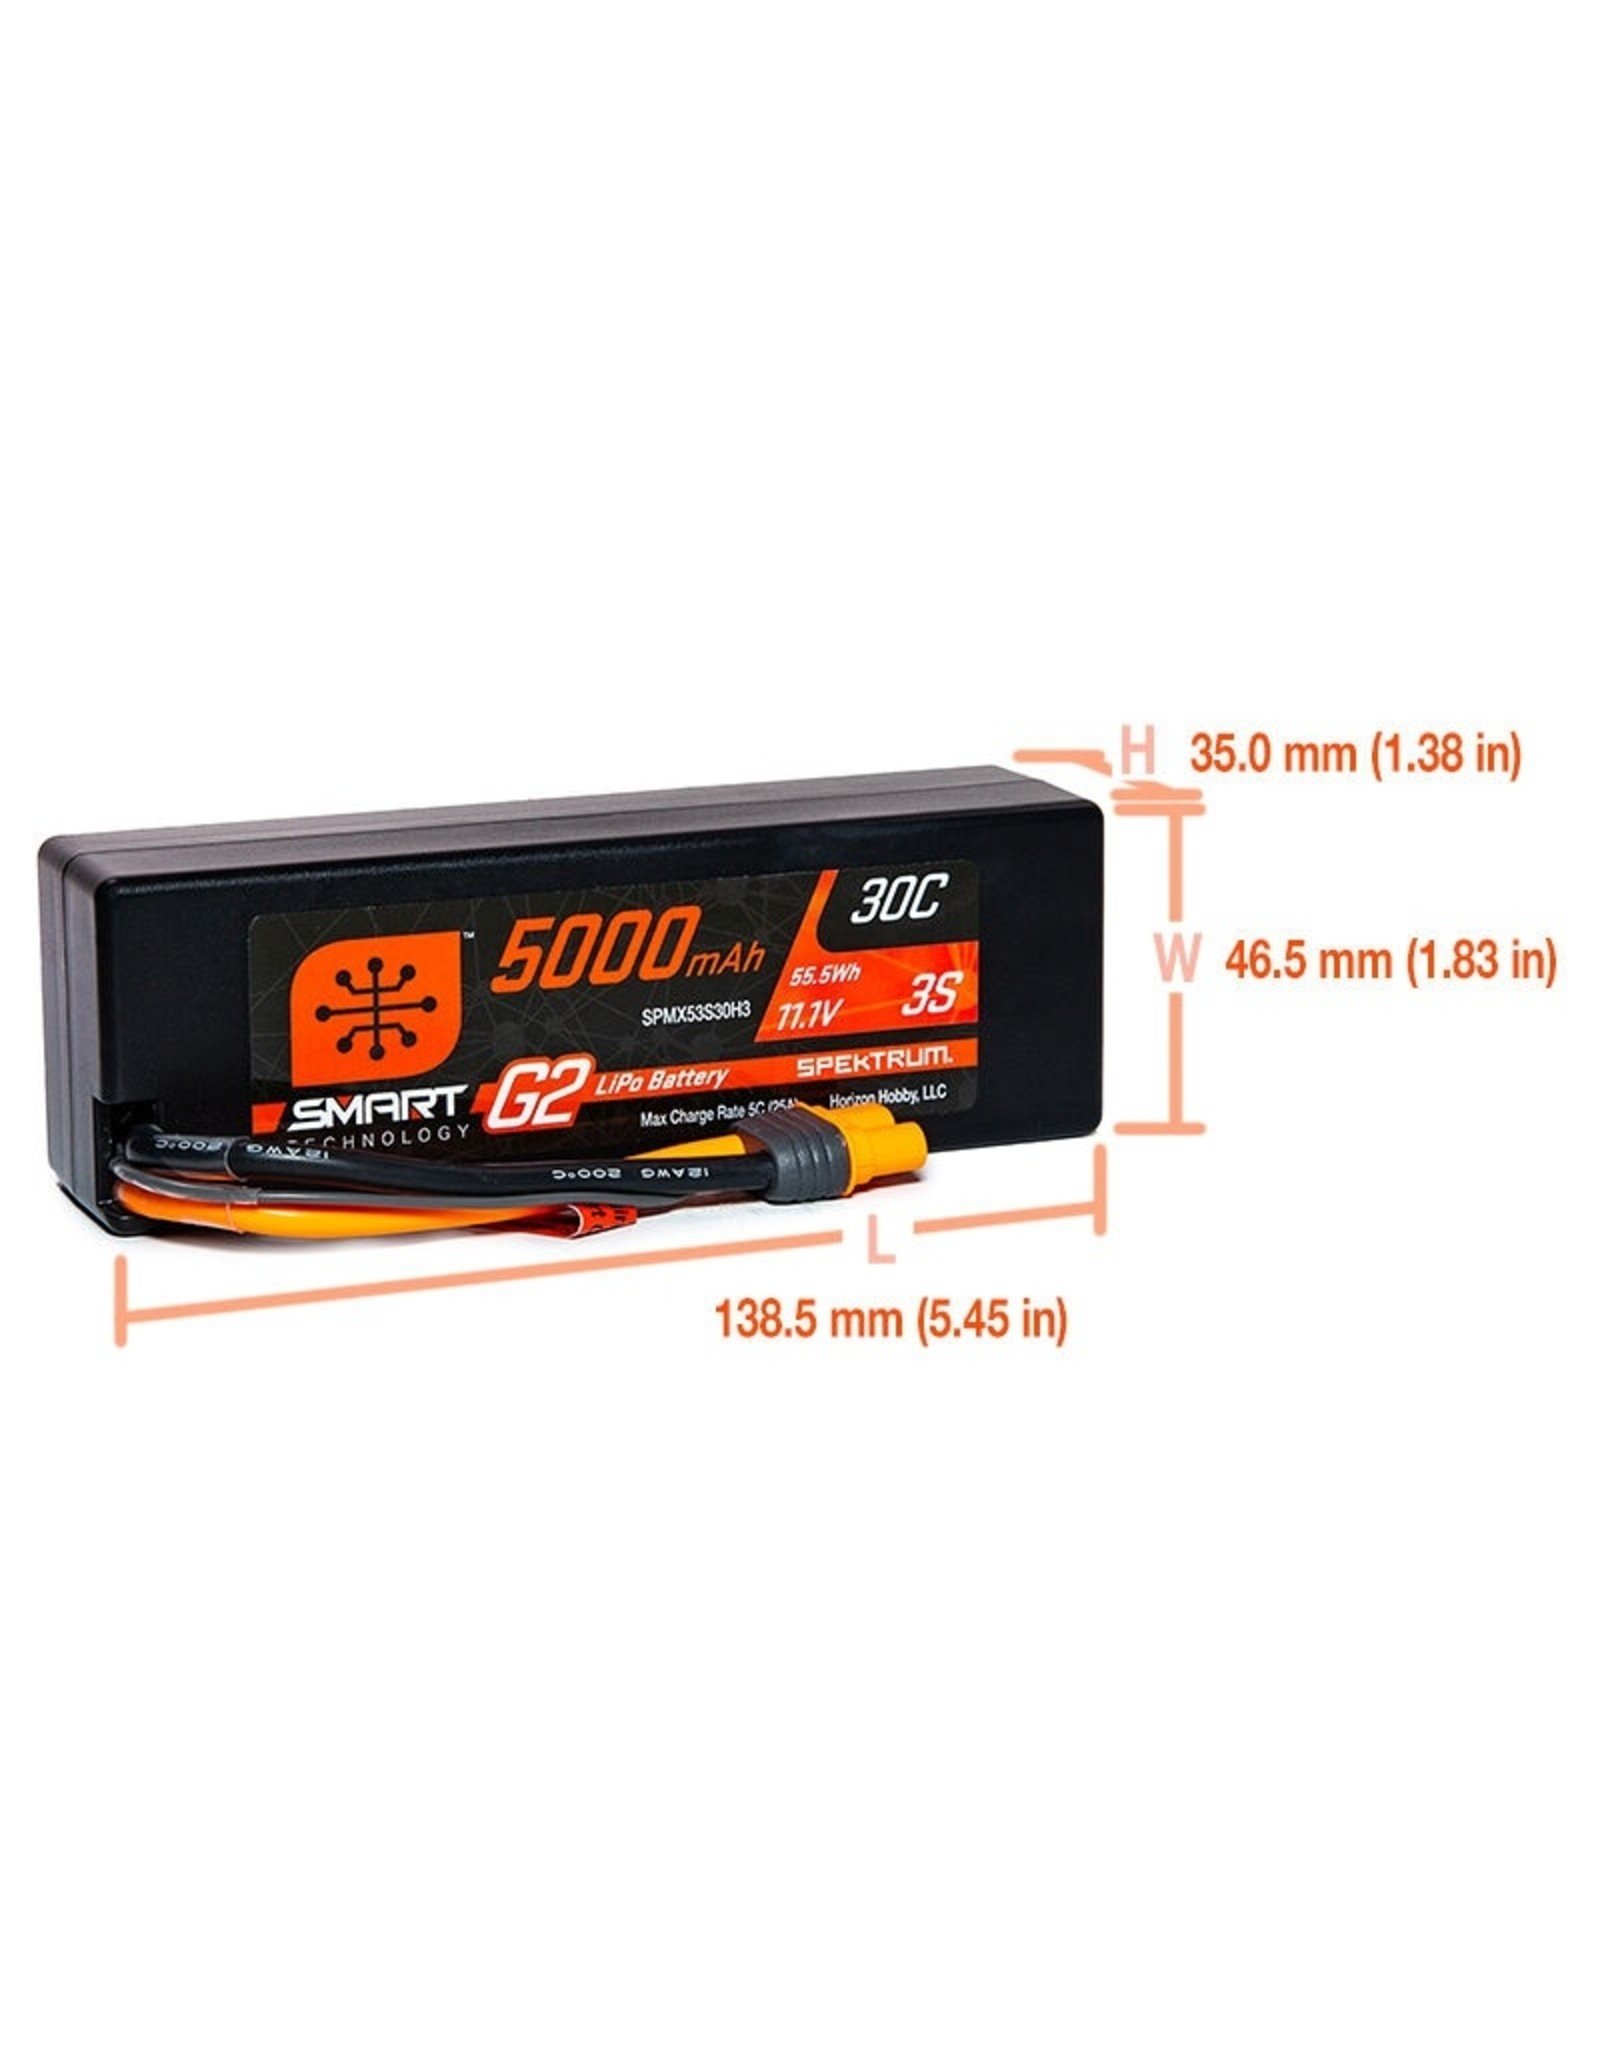 spektrum SPMX53S30H3		5000mAh 3S 11.1V Smart G2 LiPo 30C Hard Case; IC3